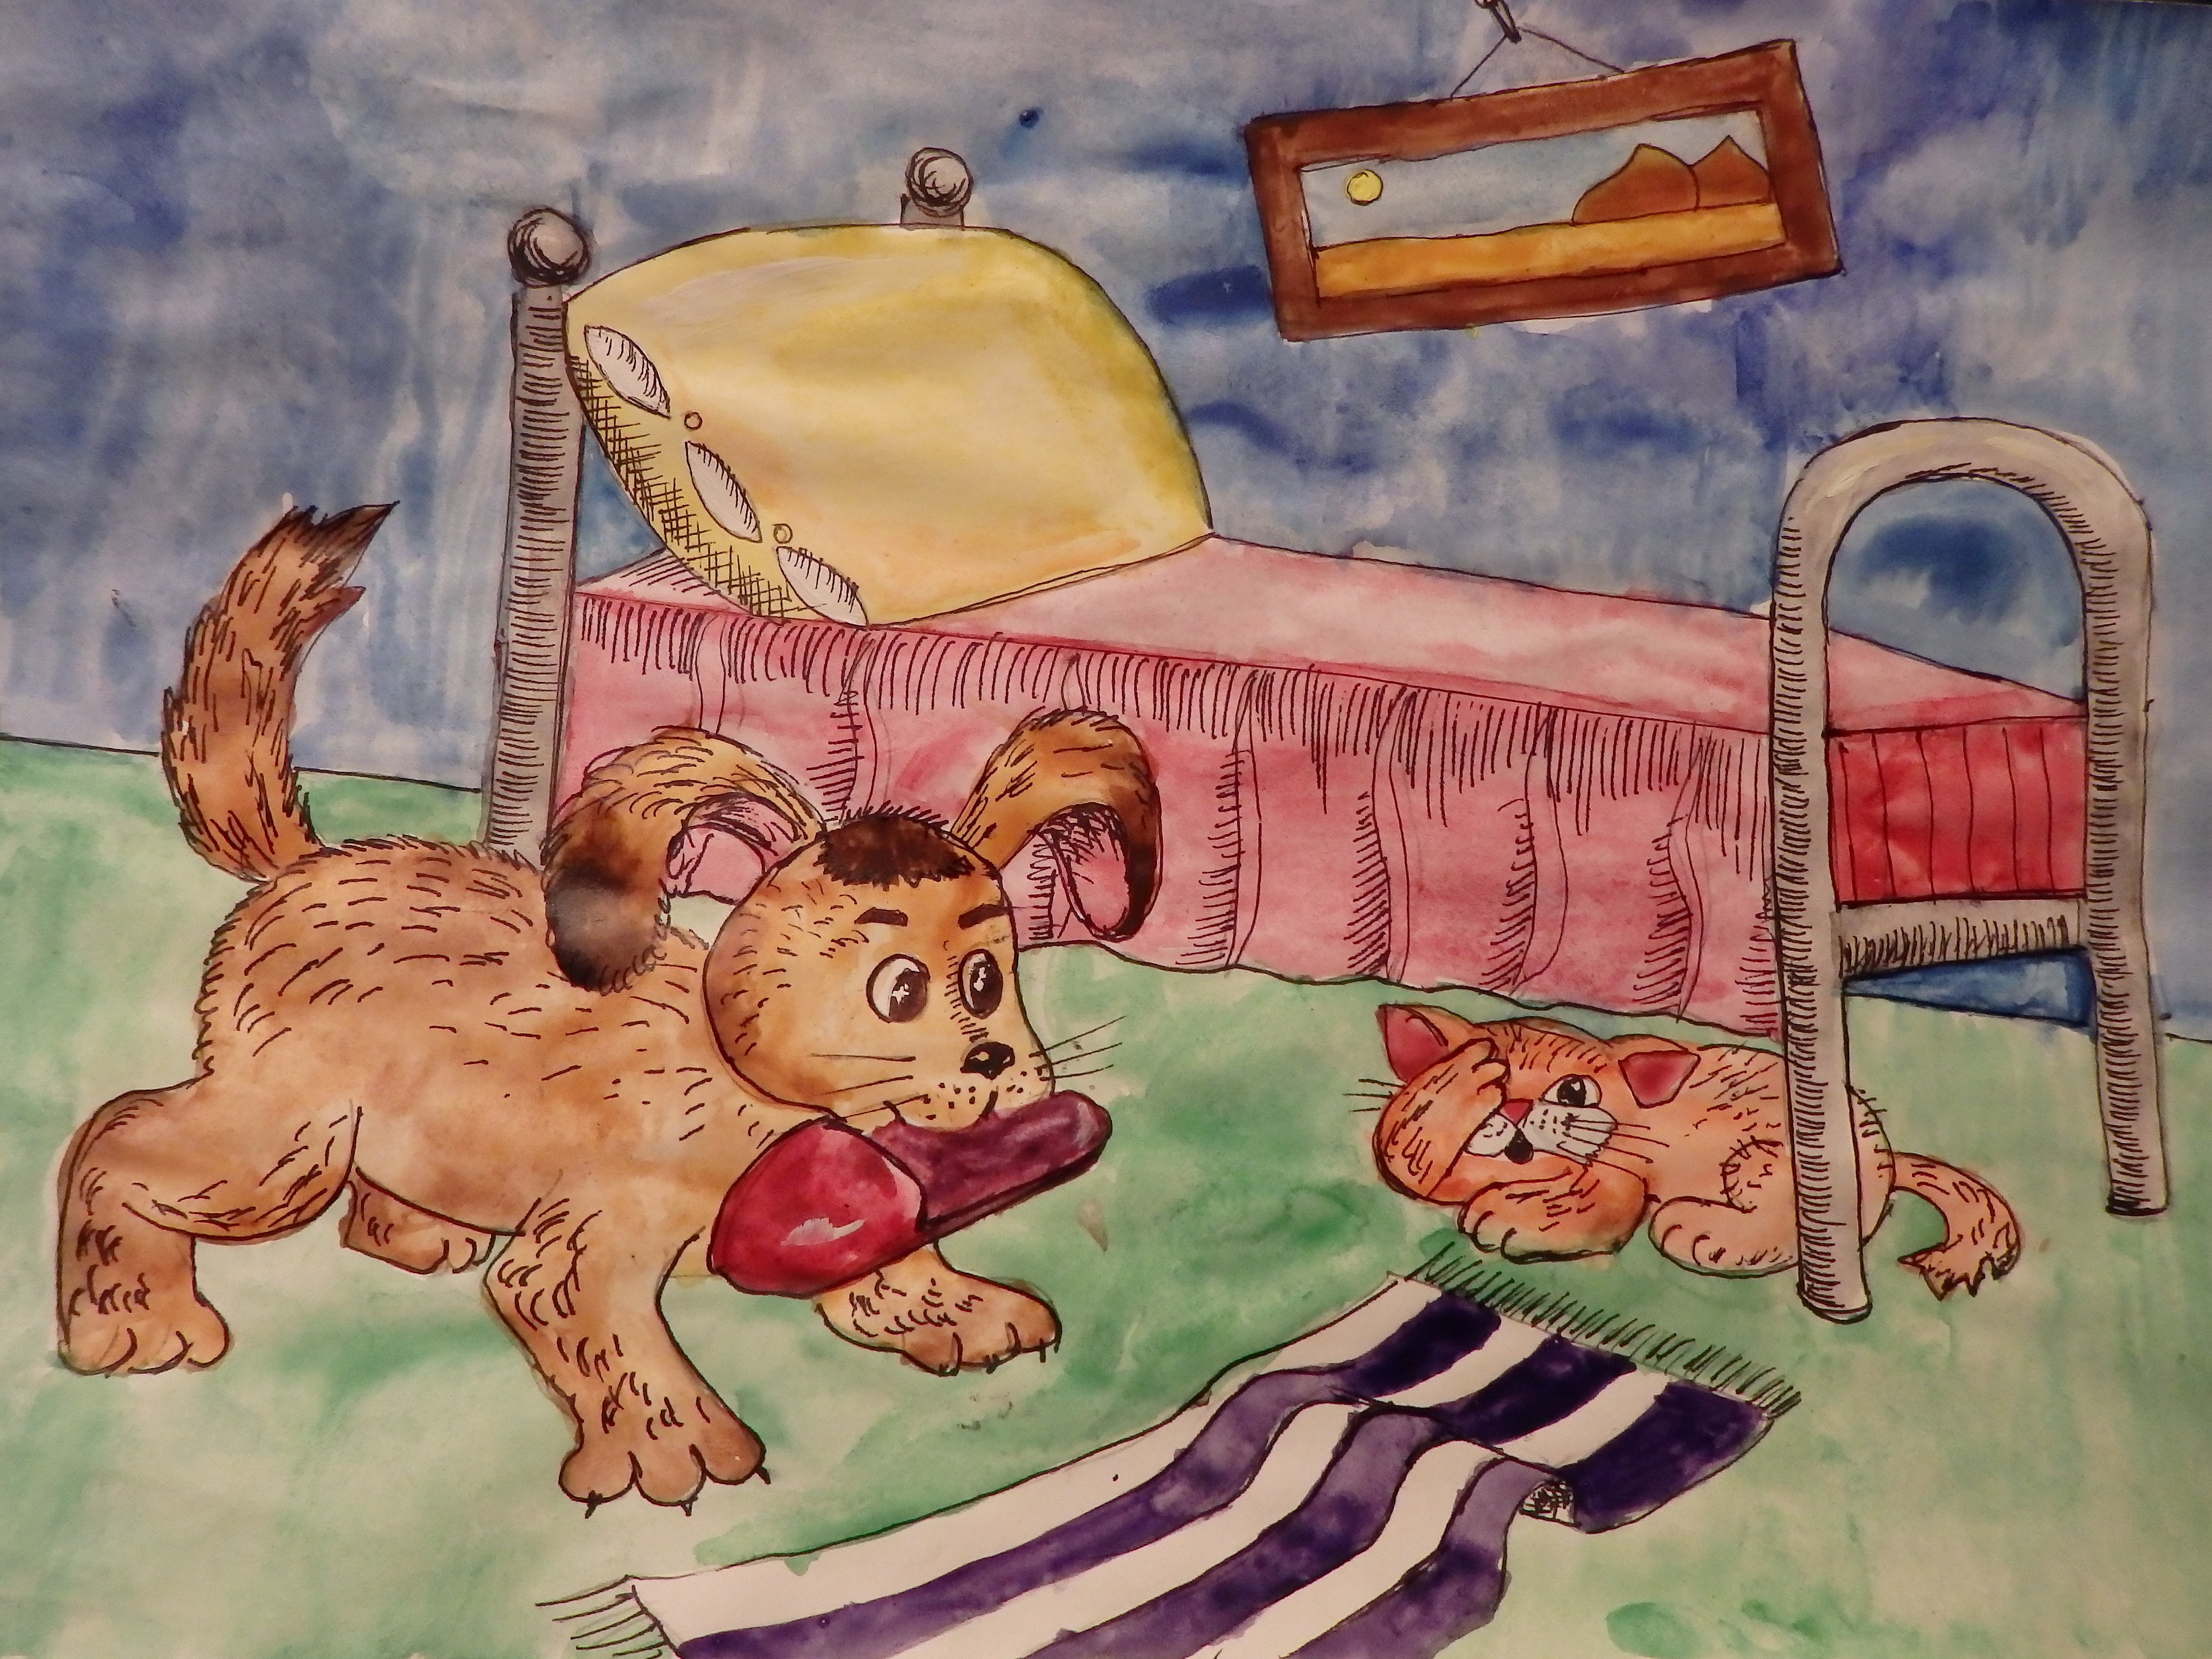 Нарисовать рисунок михалкова. Иллюстрации к произведениям Михалкова для детей. Михалков щенок иллюстрации. Иллюстрация к стихотворению щенок. Трезор рисунок детский.